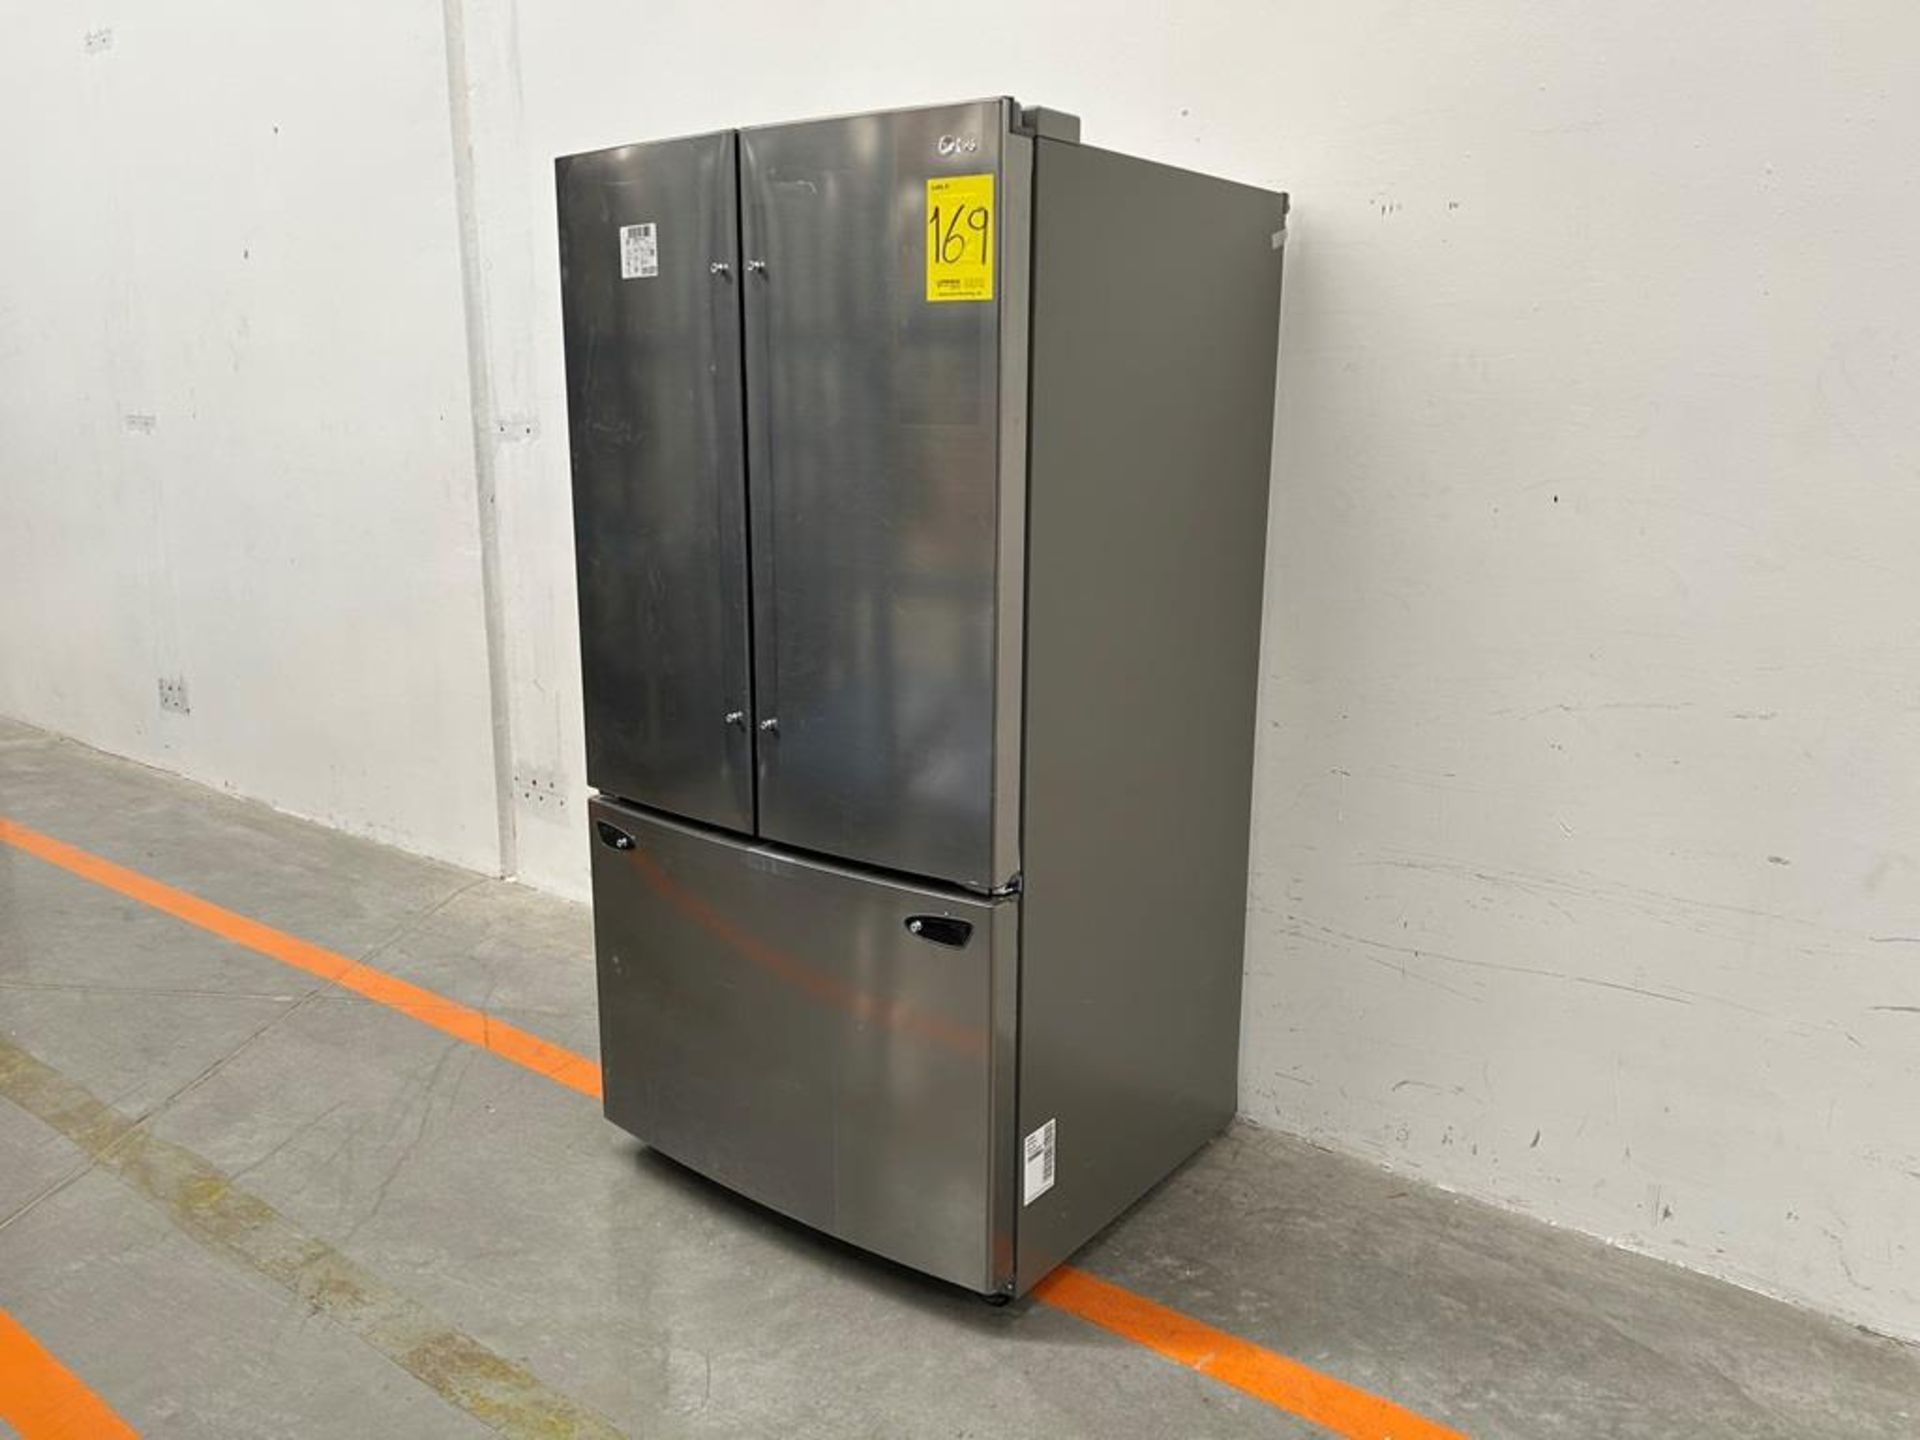 (NUEVO) Refrigerador Marca LG, Modelo GM20BIP, Serie ULY188, Color GRIS (golpe ligero frontal) - Image 2 of 12